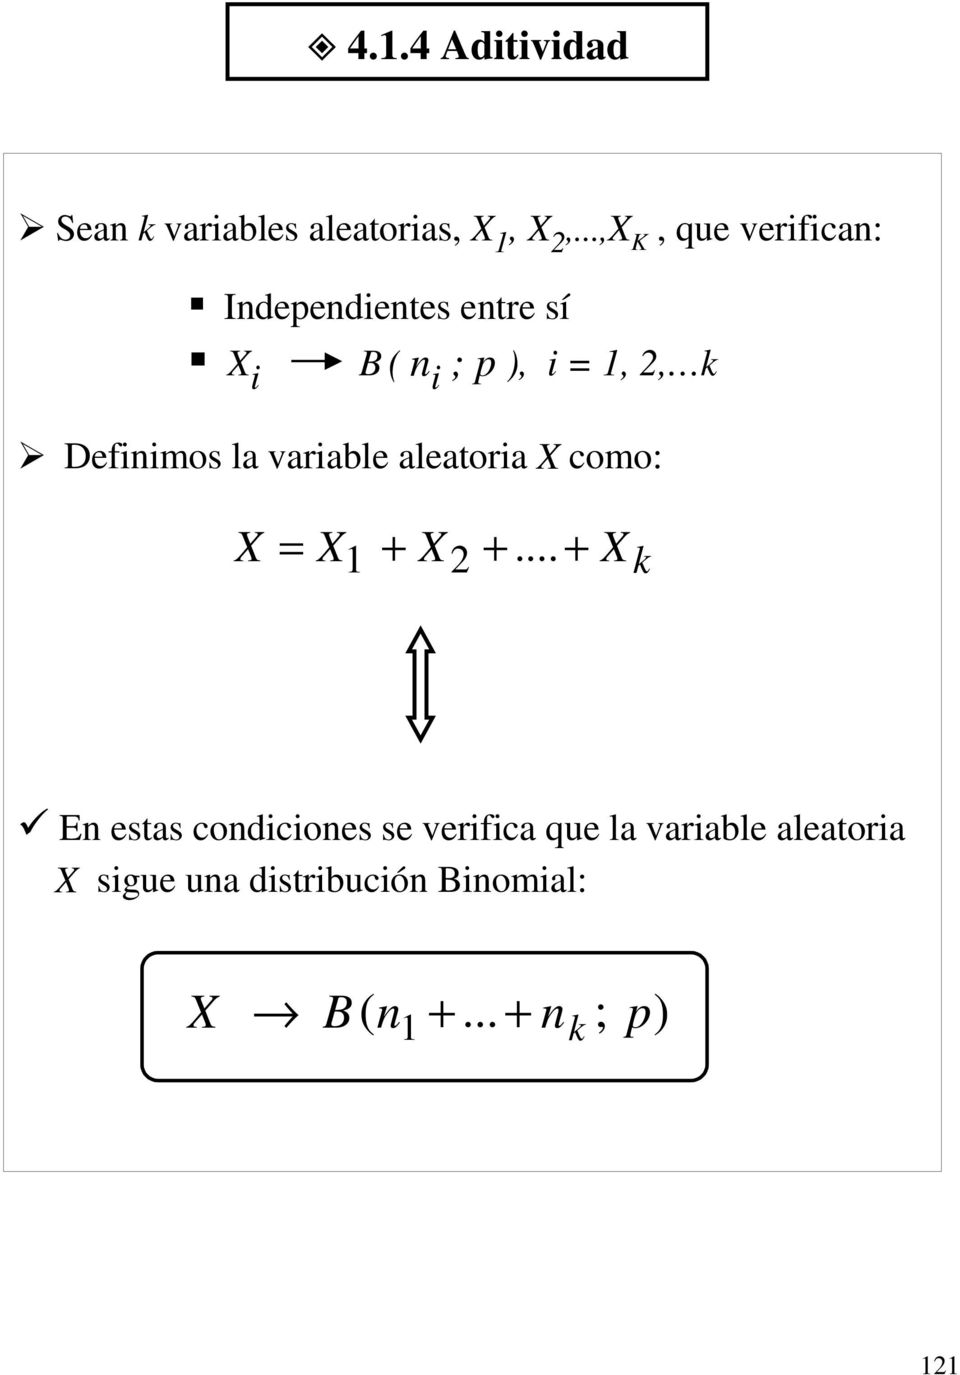 ¾ Definimos la variable aleatoria X como: X = X1 + X2 +.